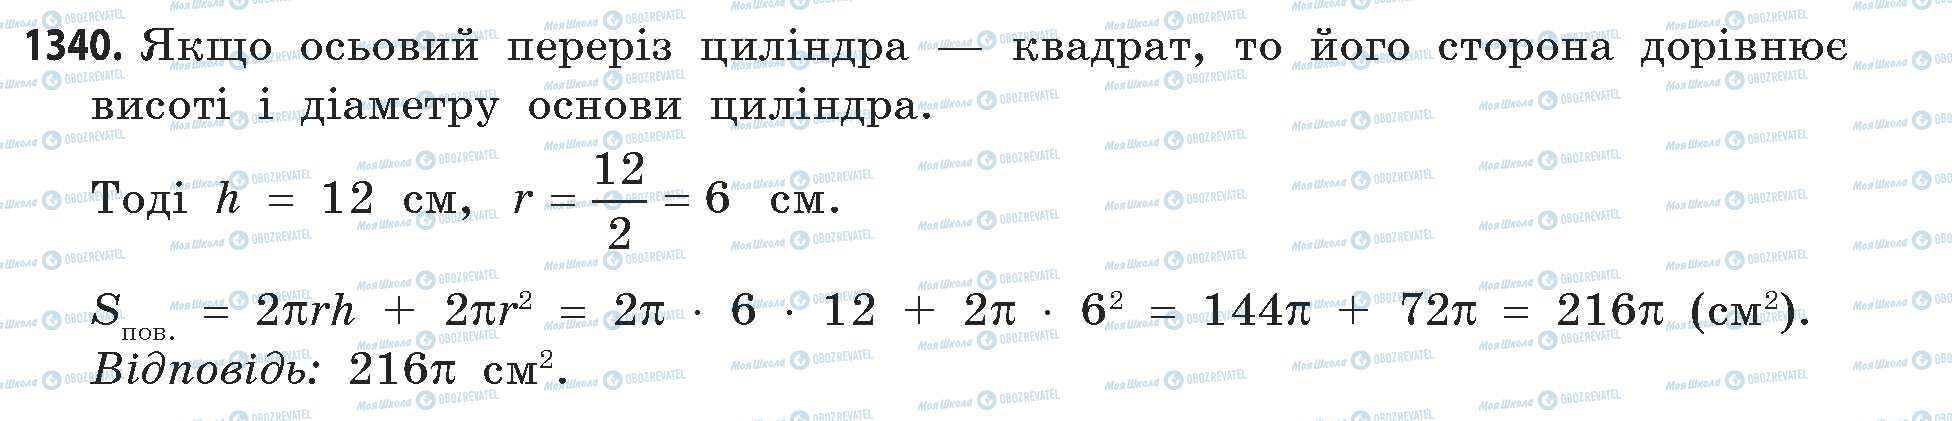 ГДЗ Математика 11 класс страница 1340